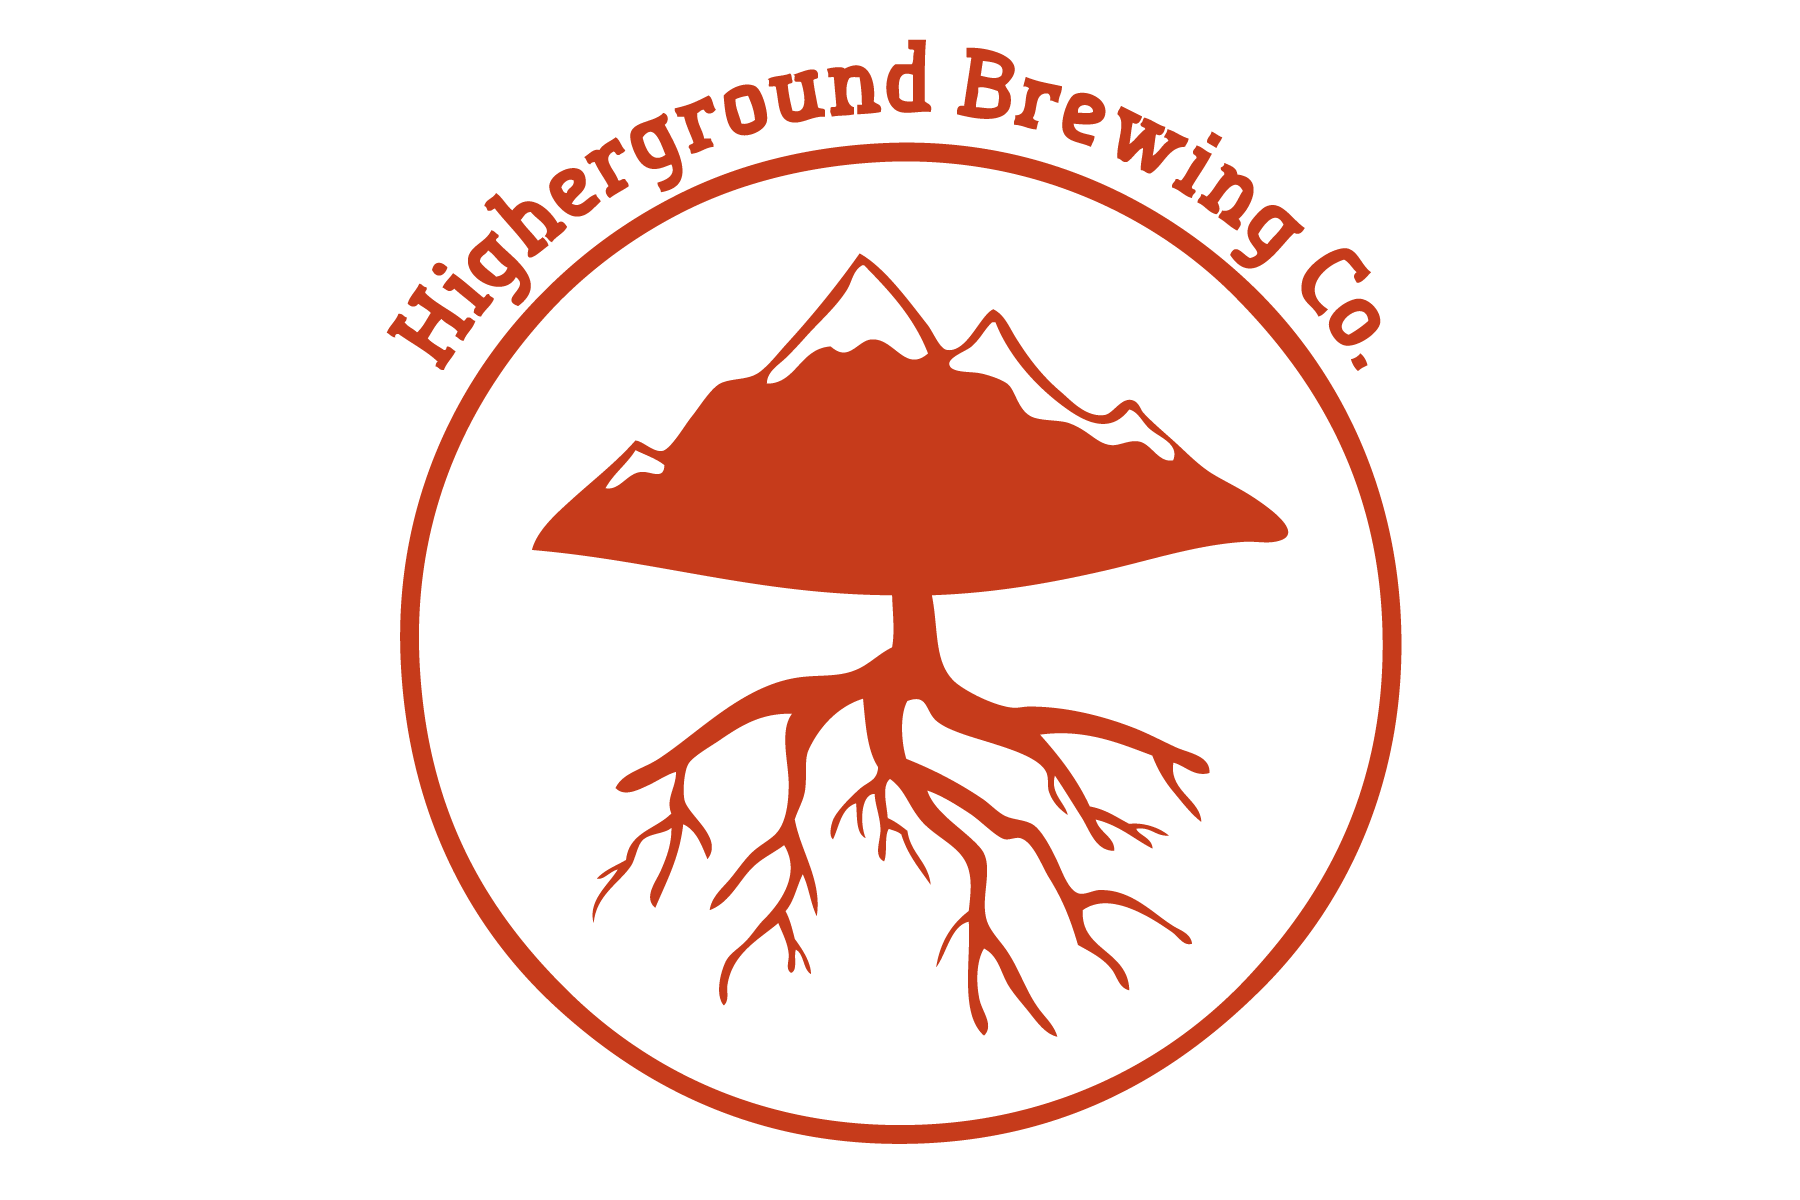 Higherground Brewing Co.